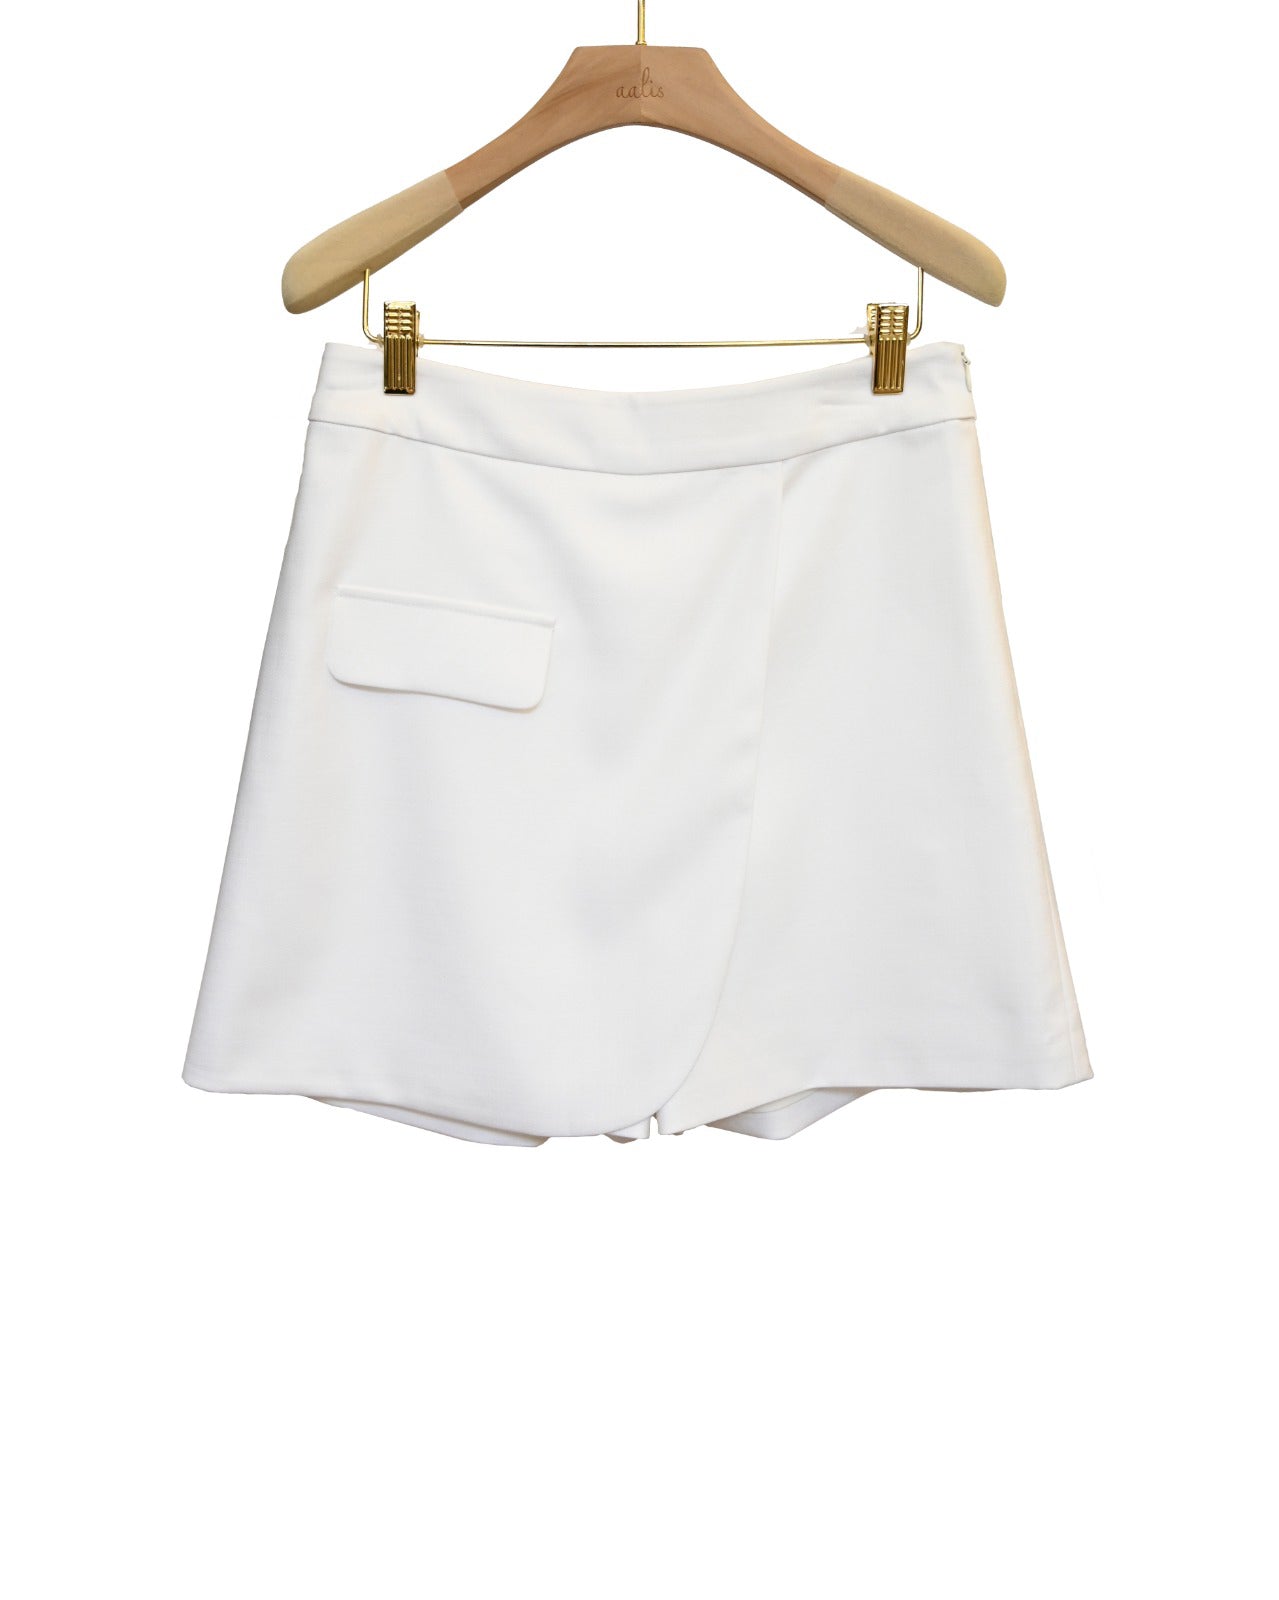 aalis GARANT single pocket skirt (White)